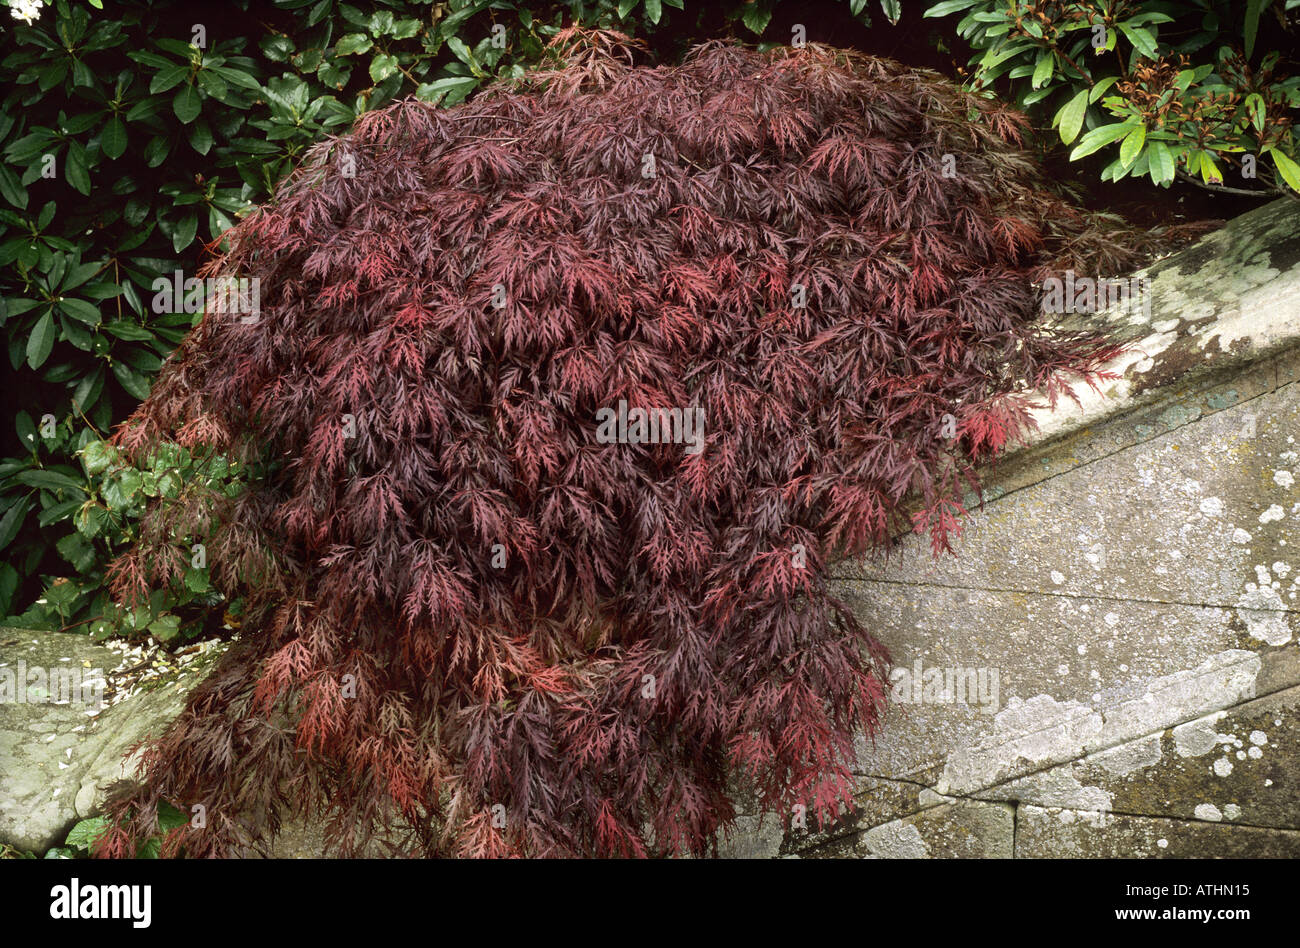 Acer palmatum dissectum 'Atropurpurea' Stock Photo